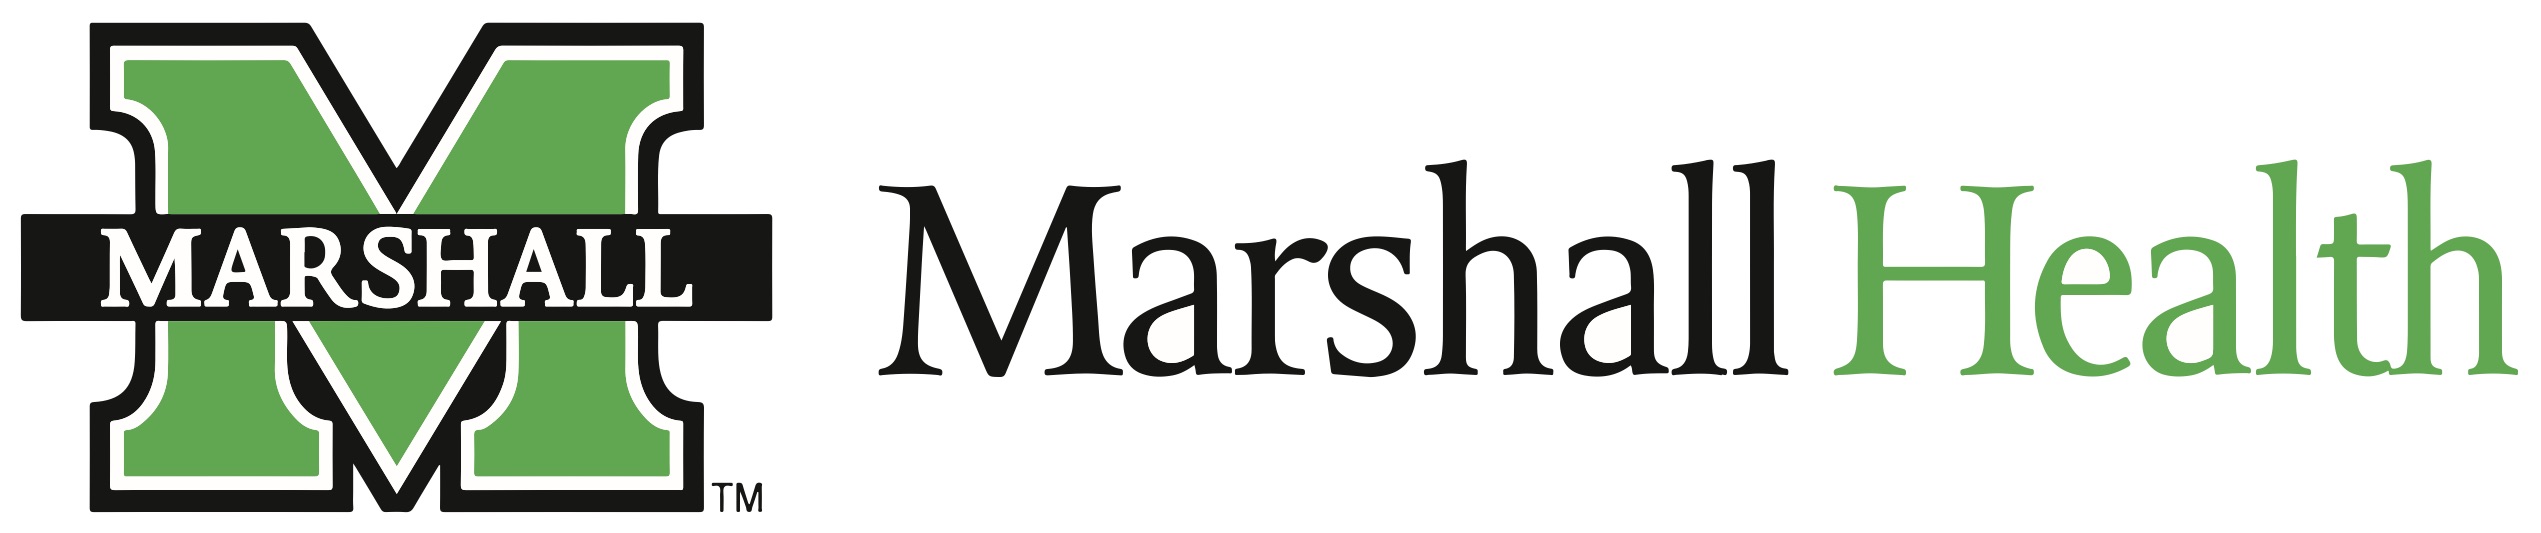 Marshall health logo